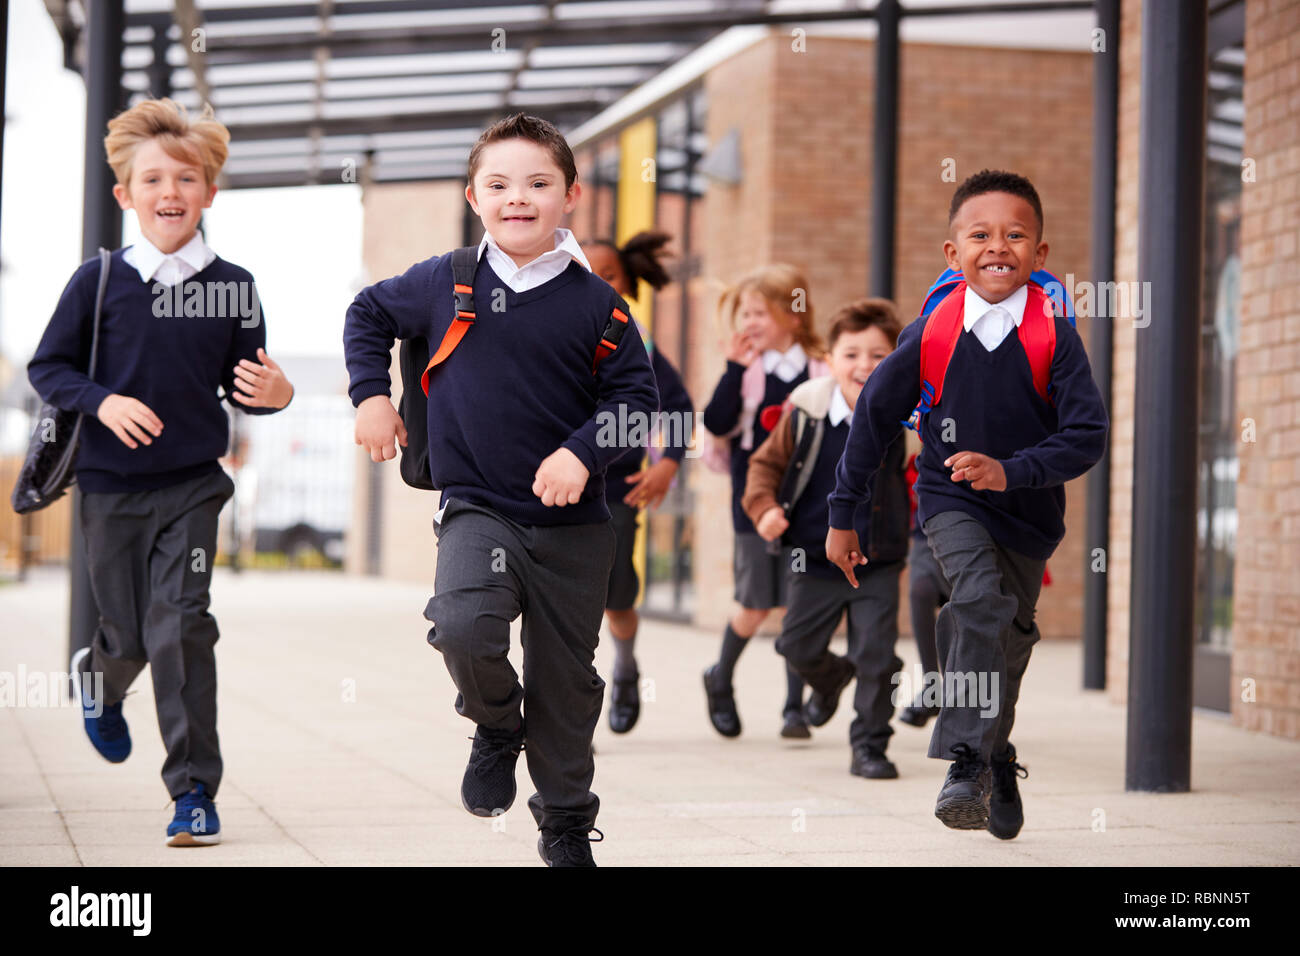 Aufgeregt Grundschule Kinder, das Tragen von Schuluniformen und Rucksäcke, die auf dem Gehweg außerhalb ihrer Schule Gebäude, Vorderansicht, in der Nähe Stockfoto